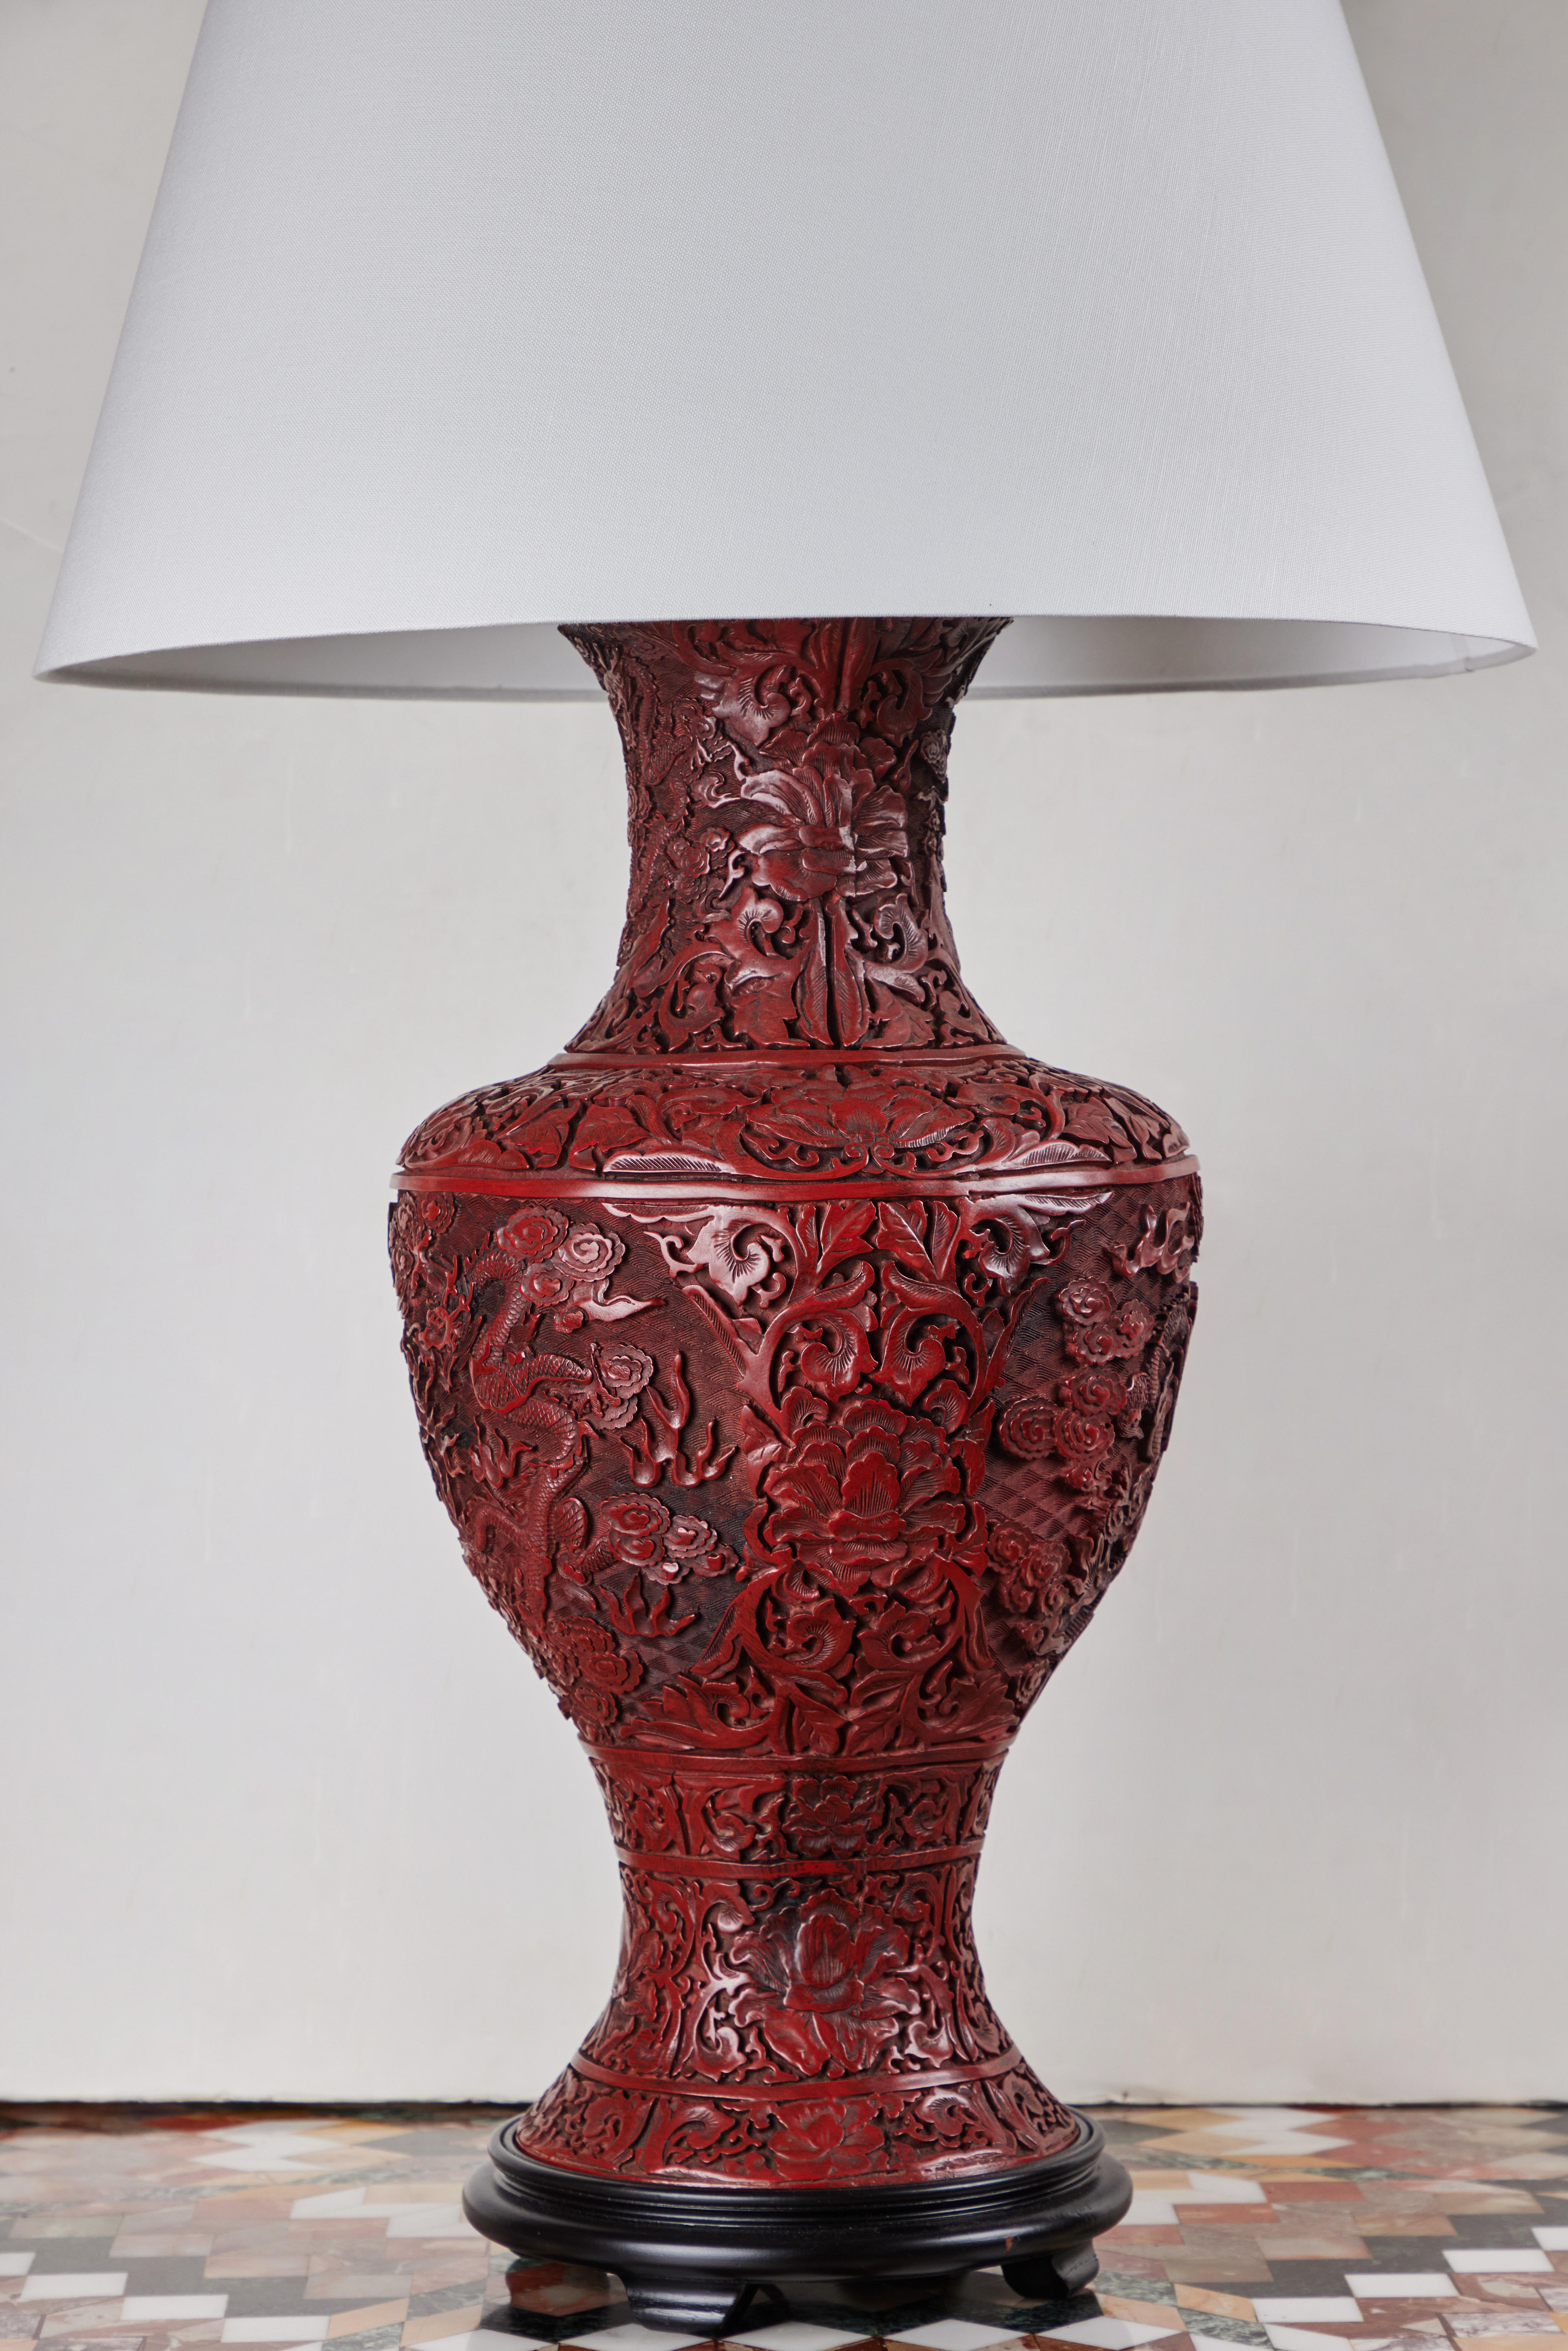 Paire de vases chinois en cinabre, sculptés de façon élaborée, transformés en lampes de table. Chacune est entièrement décorée de fleurs de chrysanthème, de formes feuillues et de dragons sinueux dans un ciel nuageux.  Nouveau câblage pour le